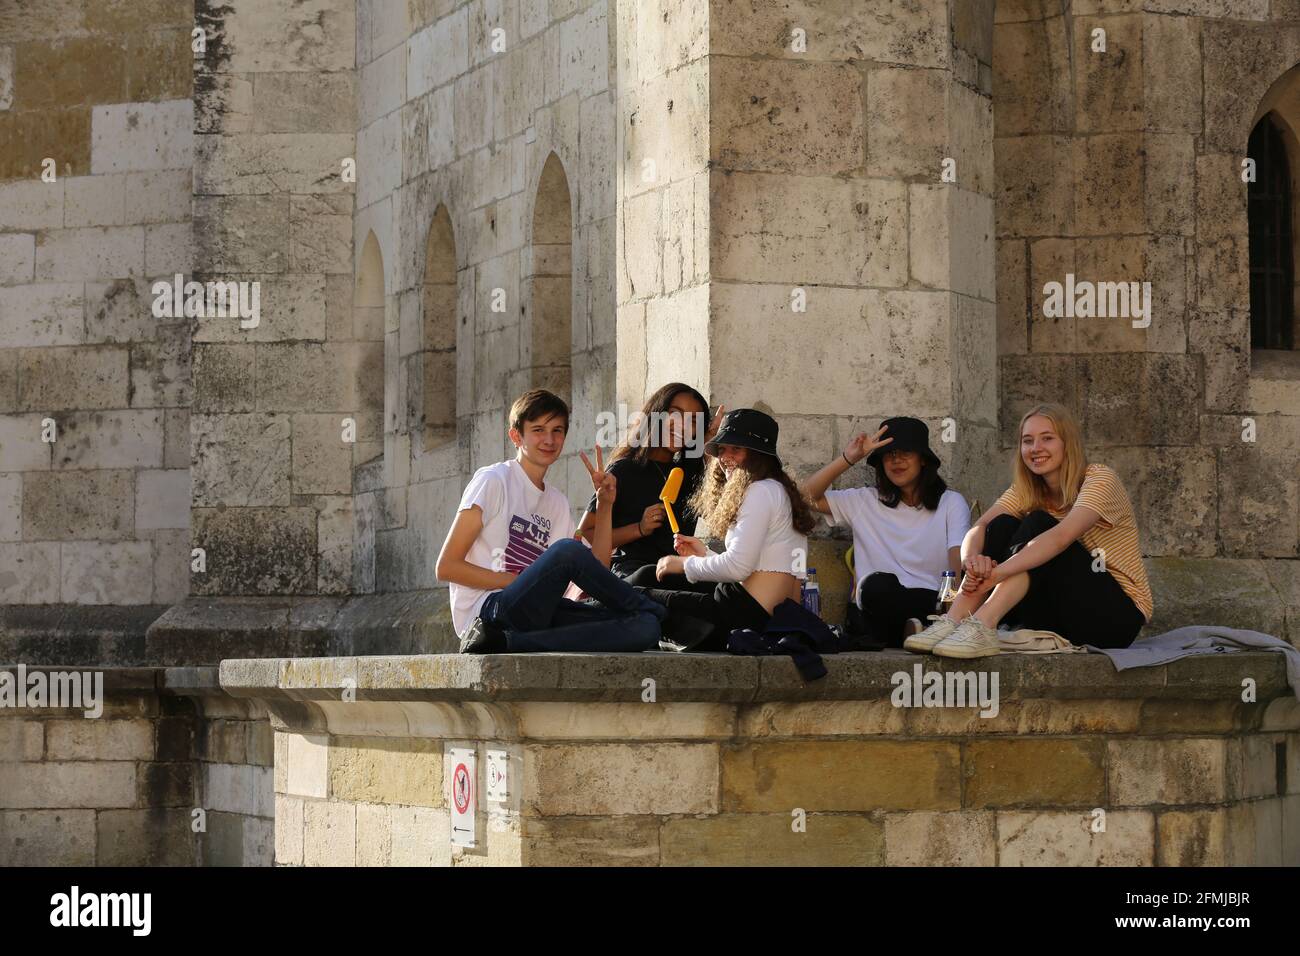 Regensburg Innenstadt oder City mit jungen Menschen die vor dem Dom sitzen Banque D'Images